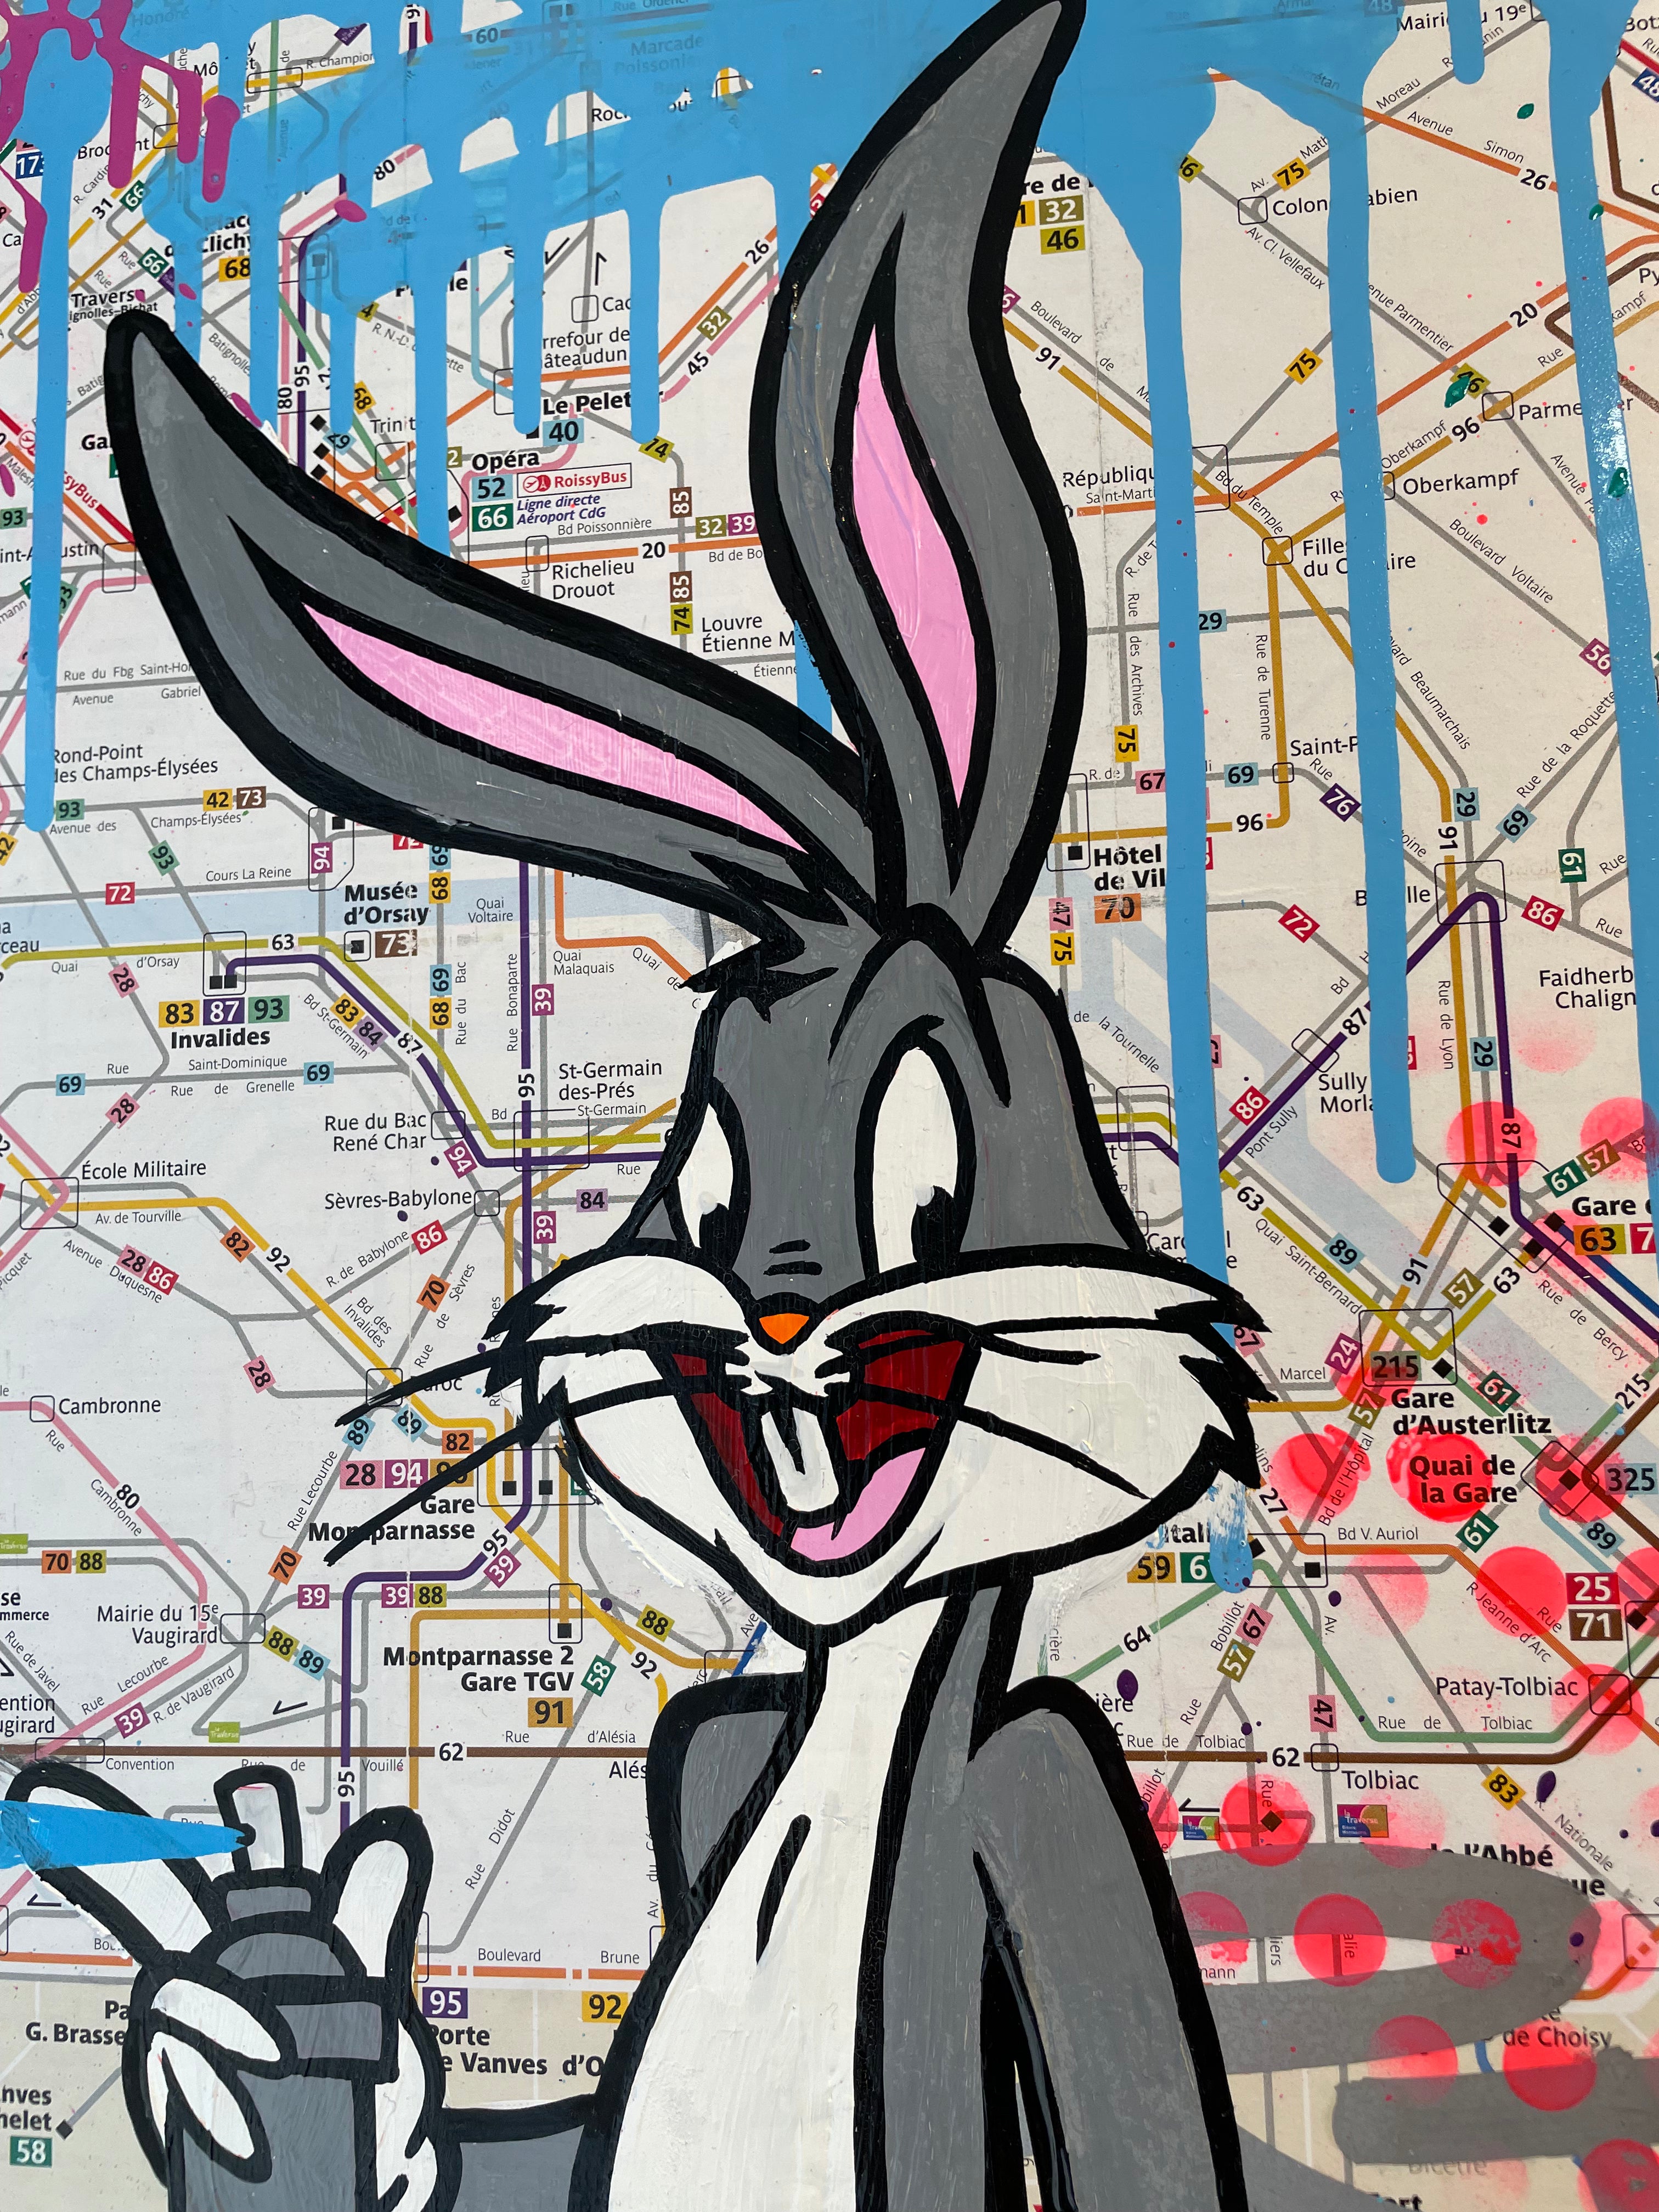 FAT- Plan de métro Bugs Bunny